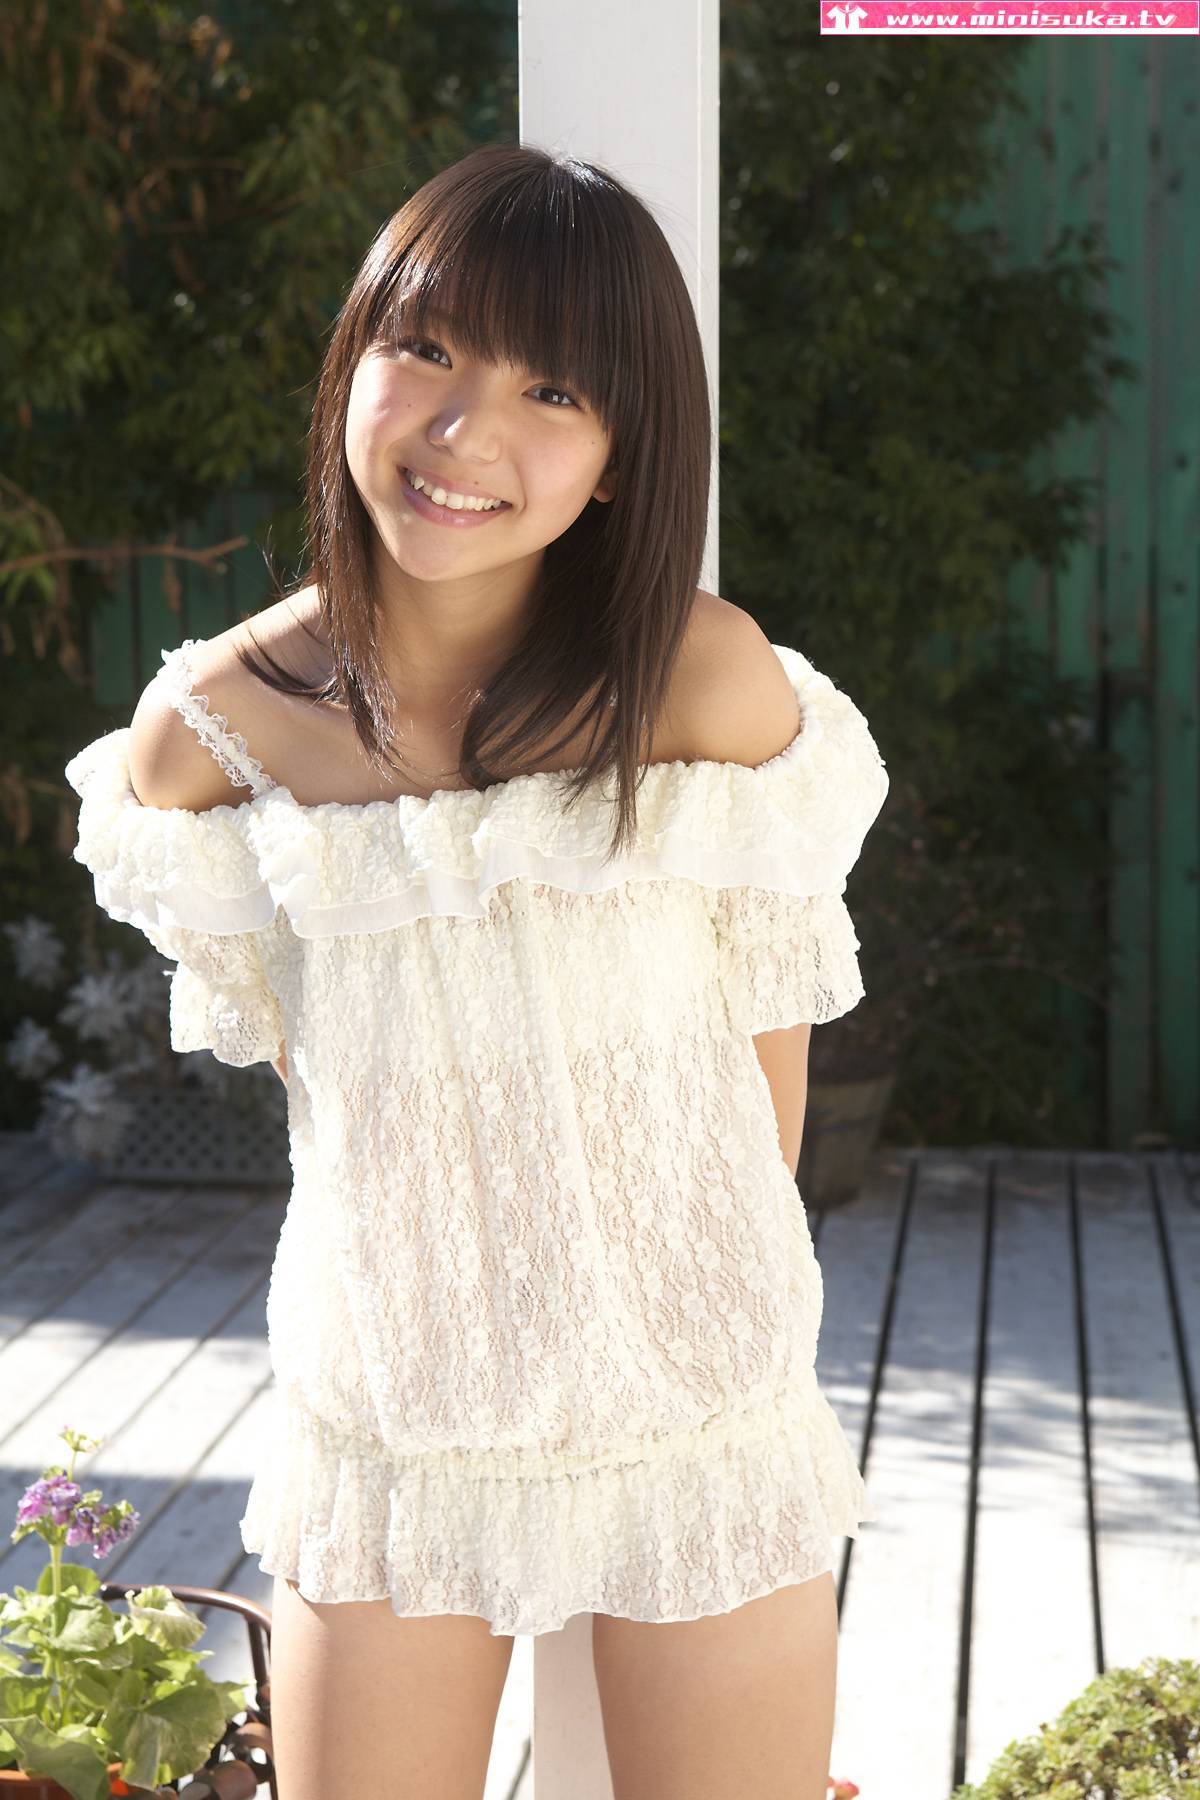 Nishioka Fuwa fuuka nishihama Minisuka. TV Junior high school girl photo